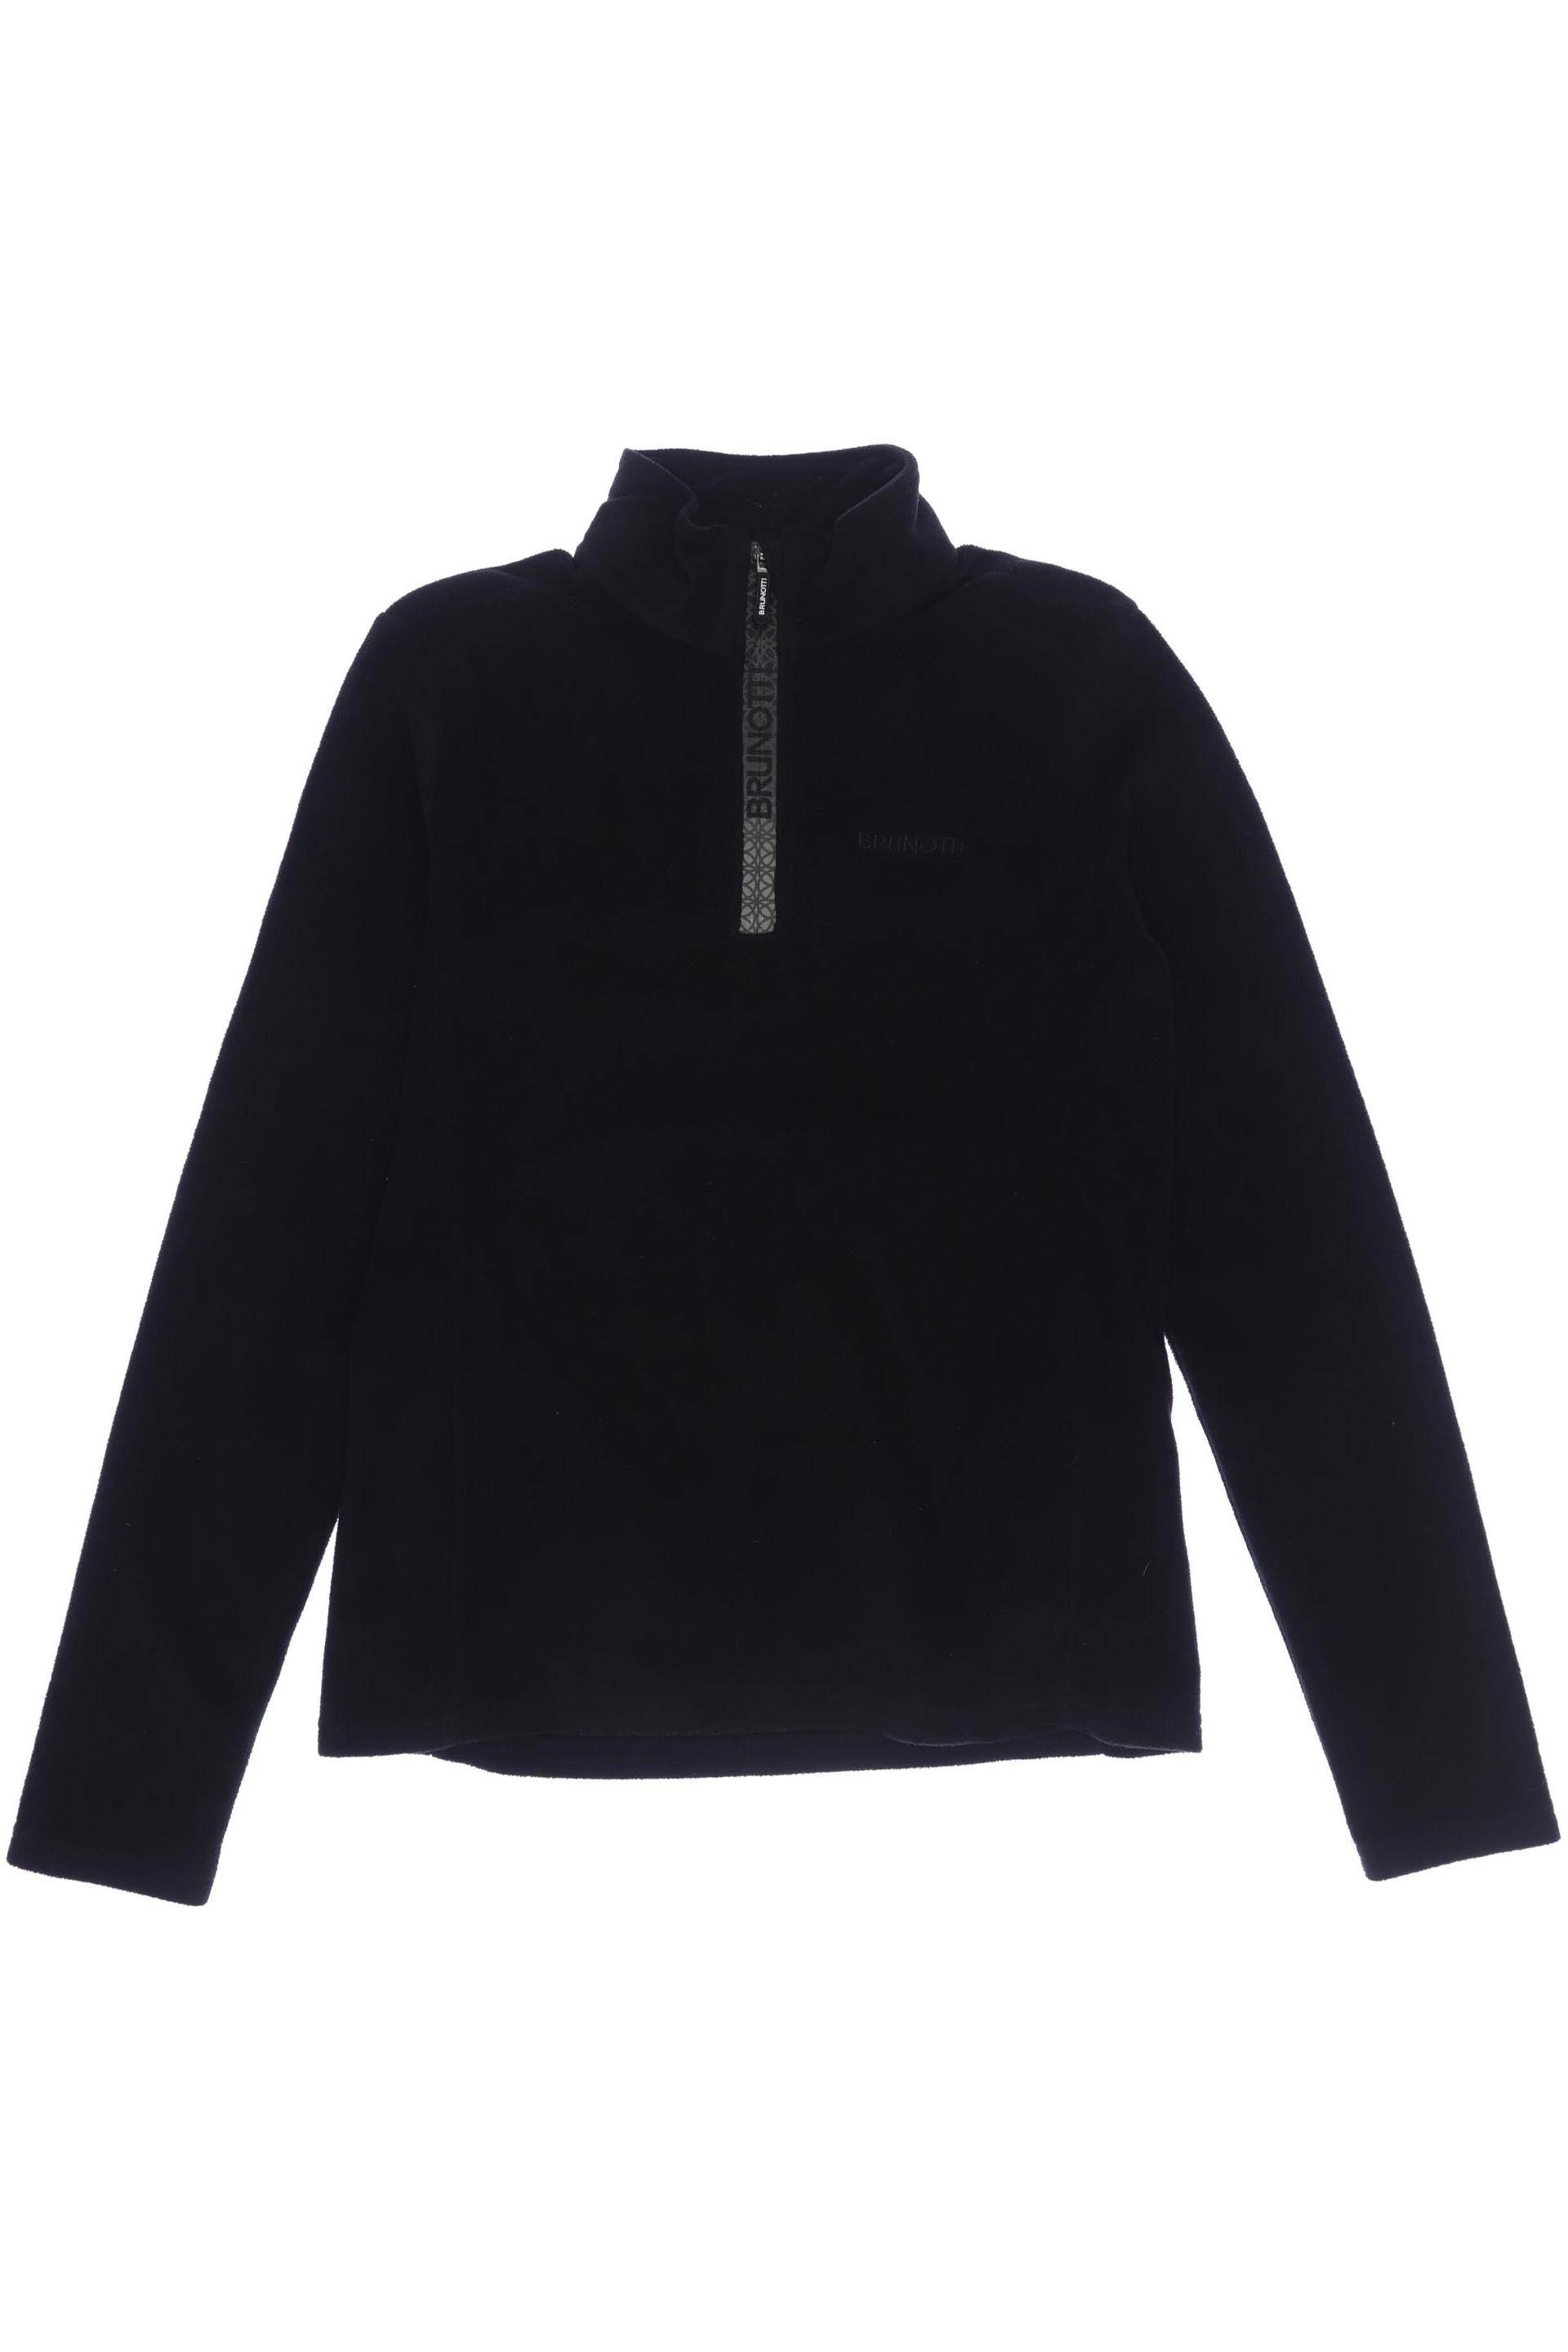 Brunotti Herren Hoodies & Sweater, schwarz, Gr. 164 von brunotti